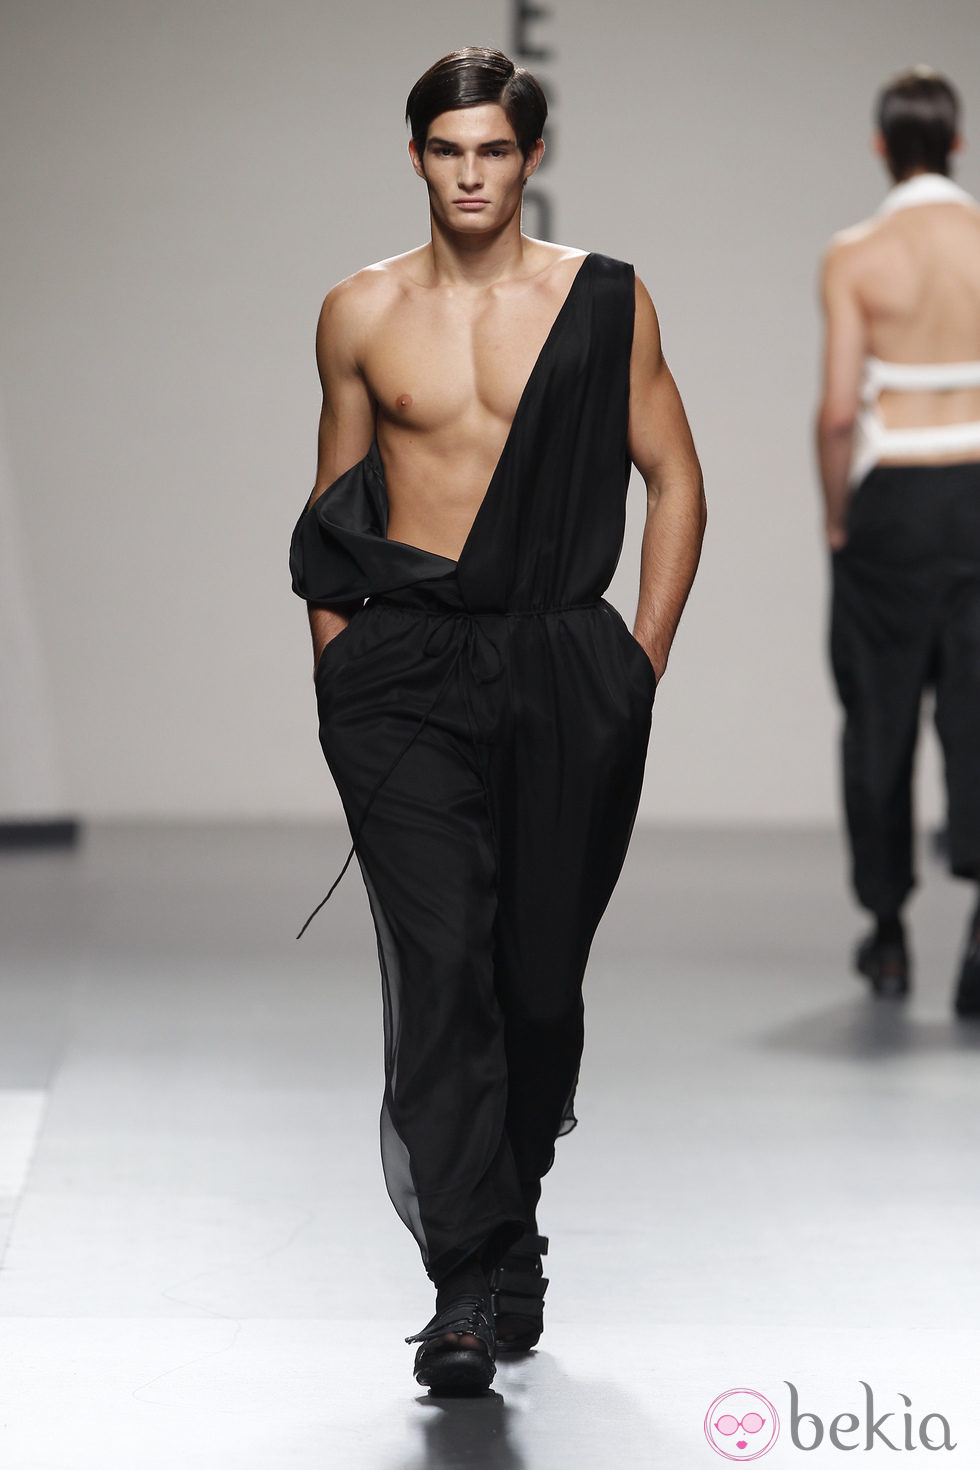 Pantalón negro ancho con tirantes de Alberto Puras en Cibeles, colección primavera 2012